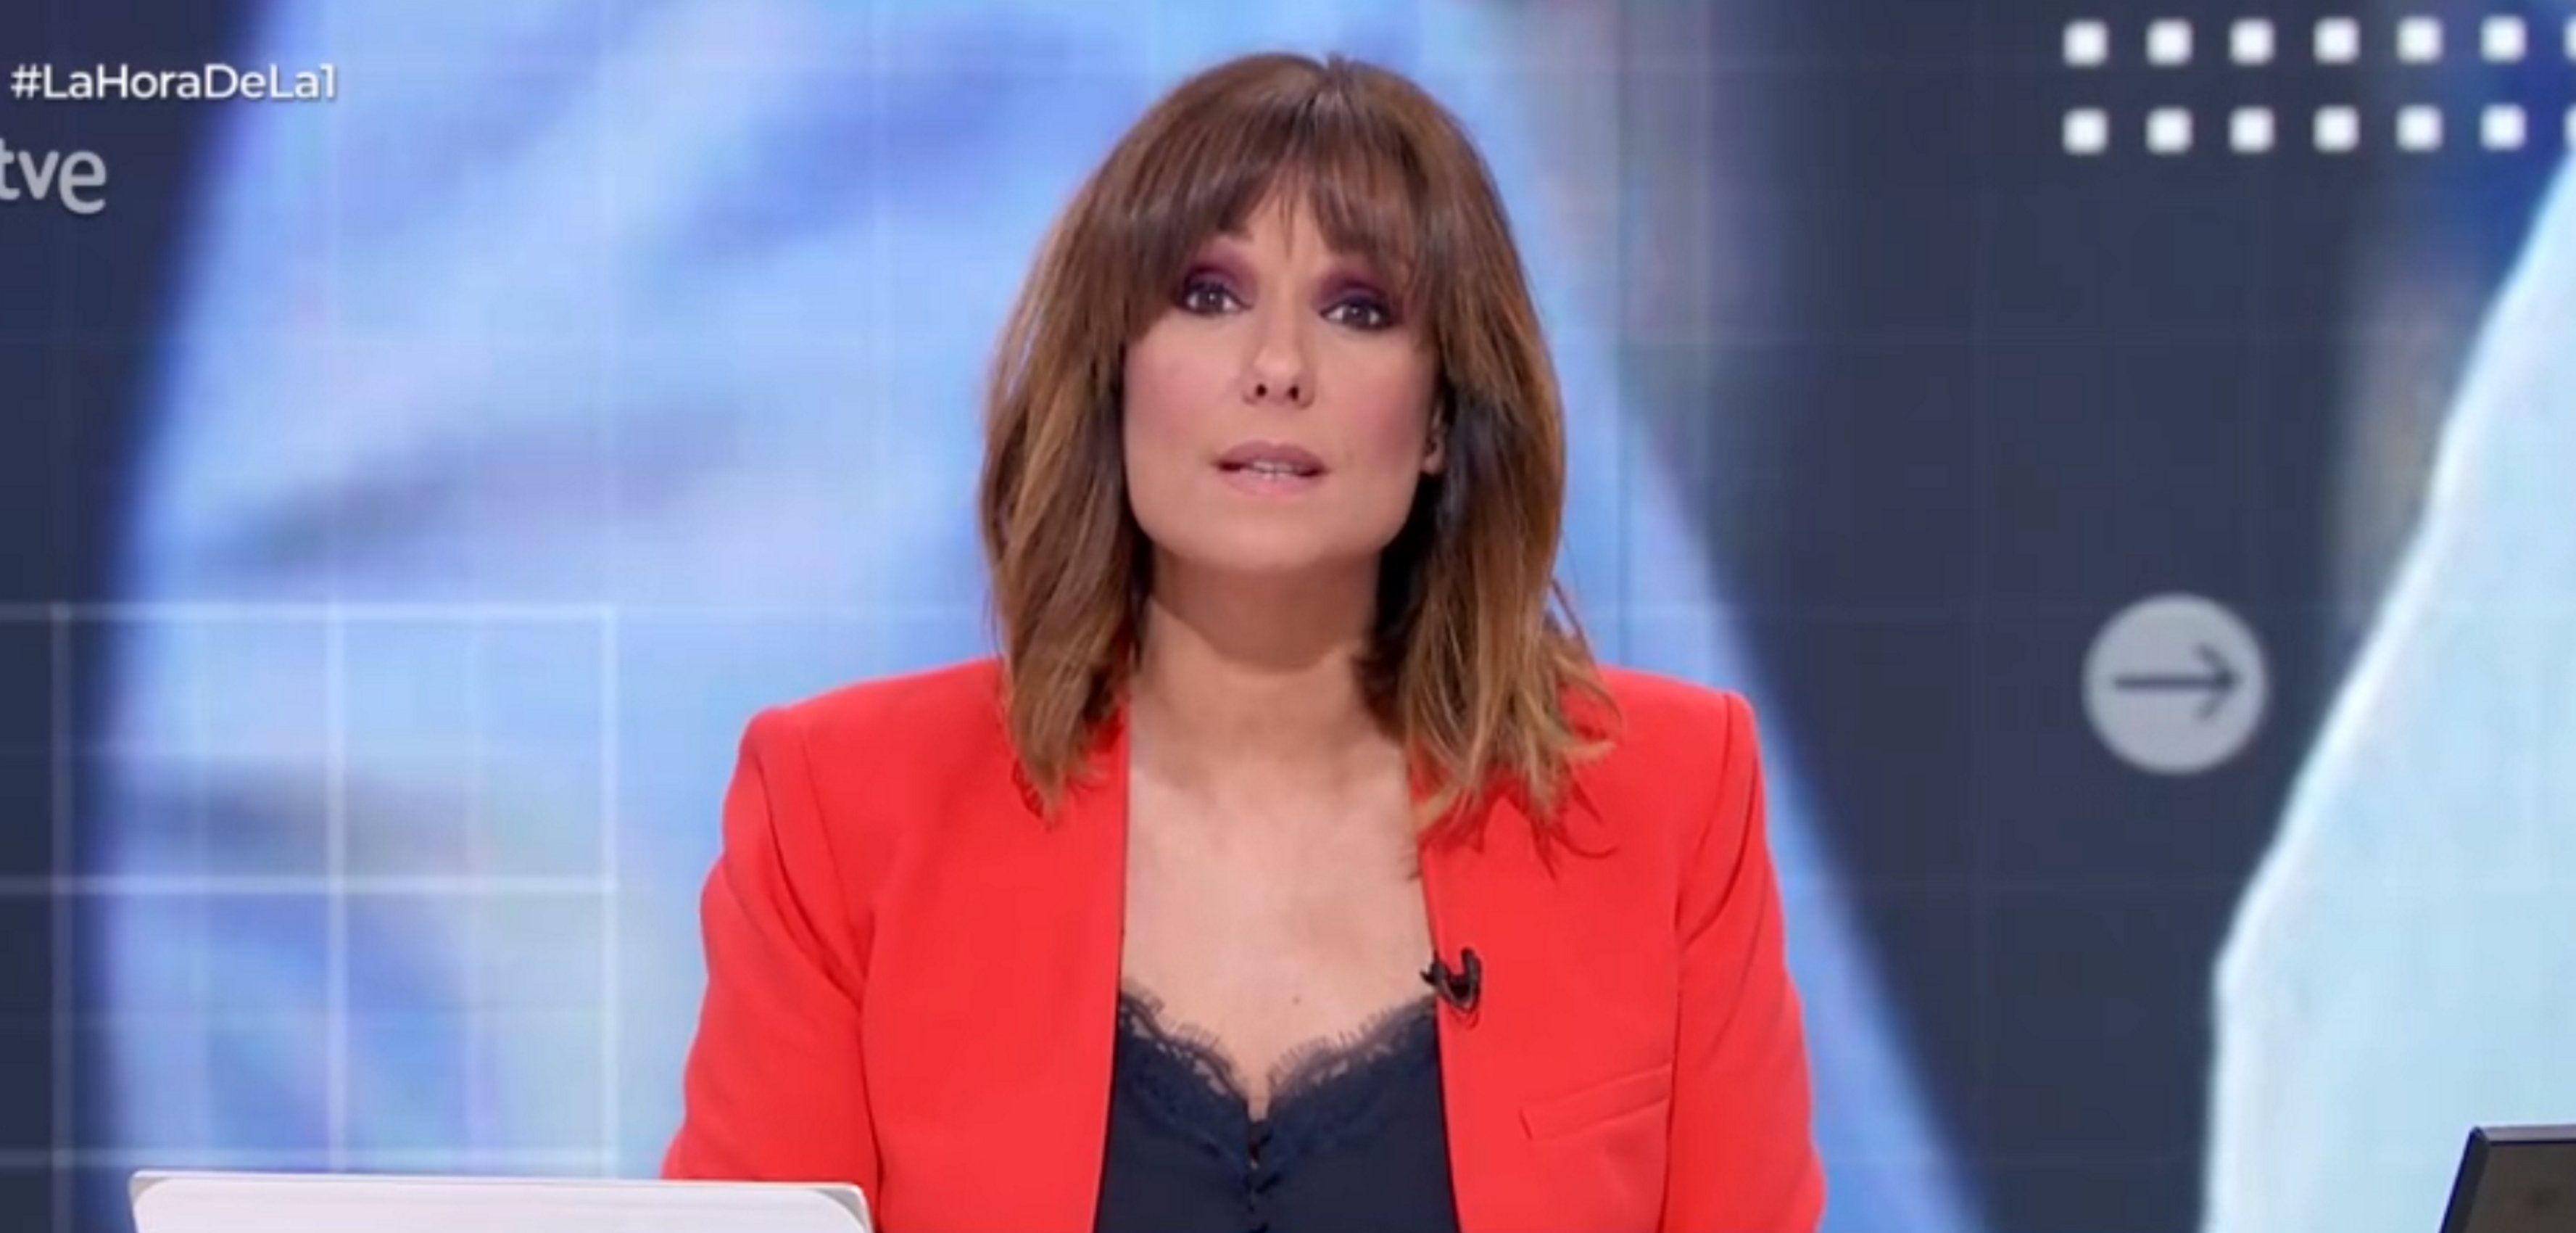 Mònica López, sentenciada: TVE fulminará 'La Hora de la 1'